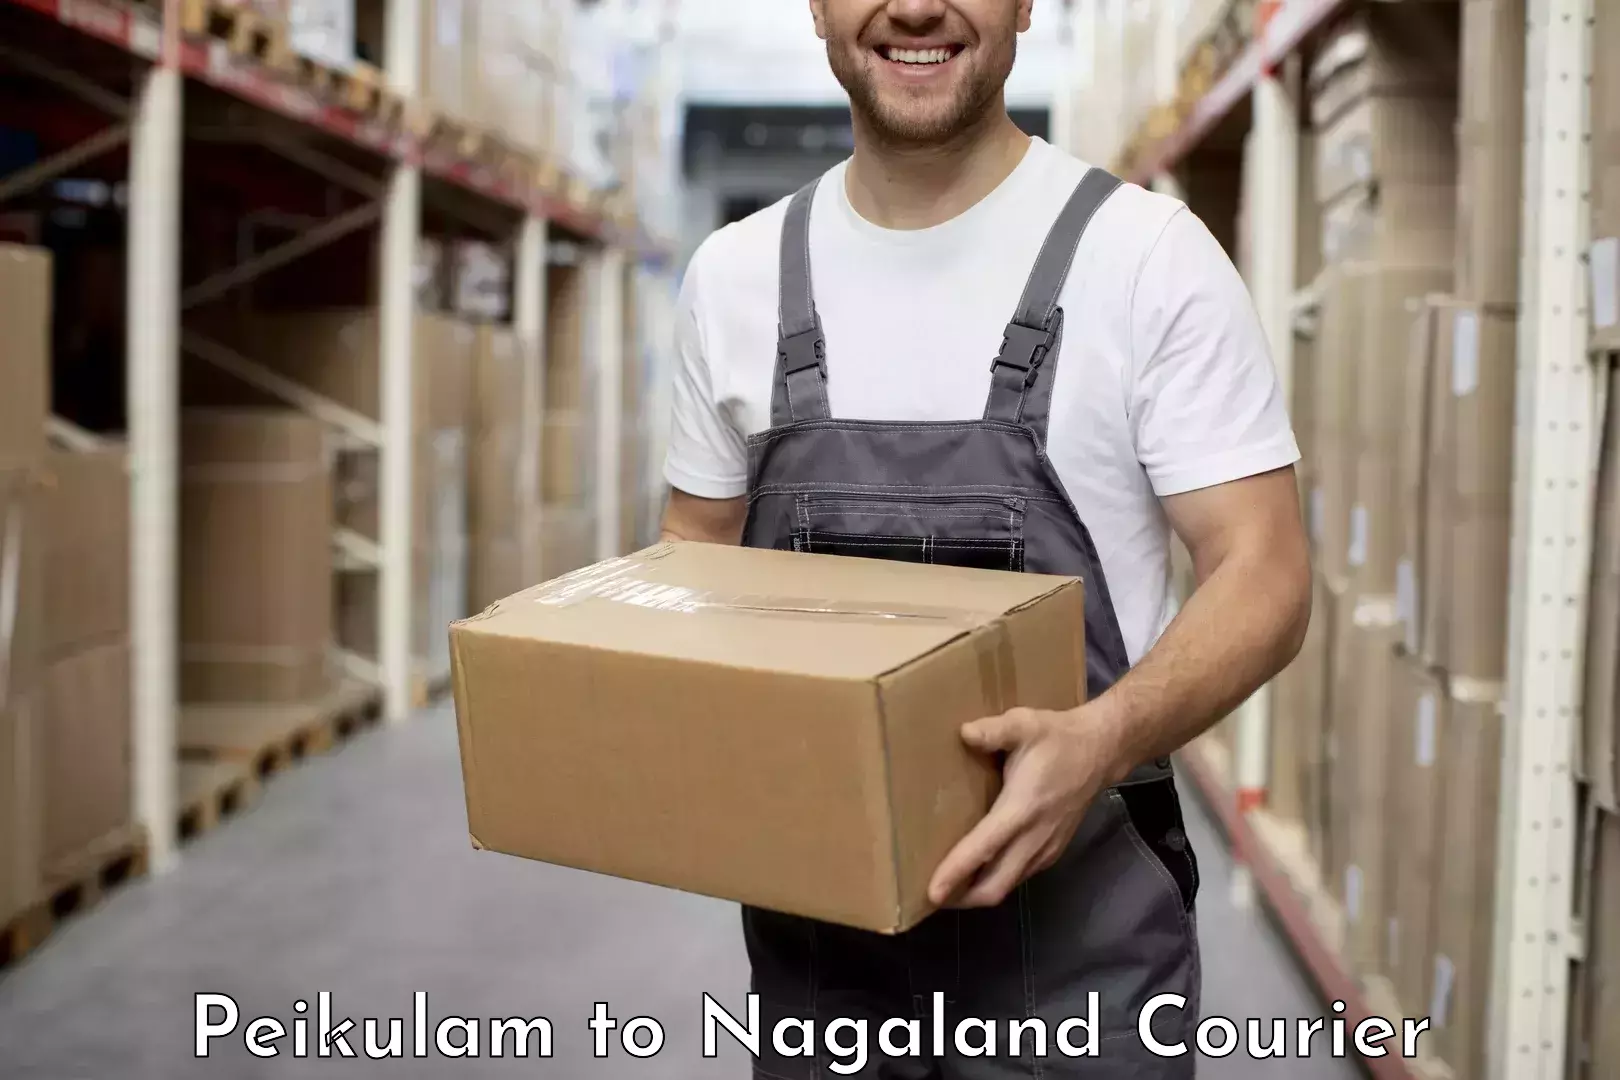 Premium courier solutions in Peikulam to Dimapur